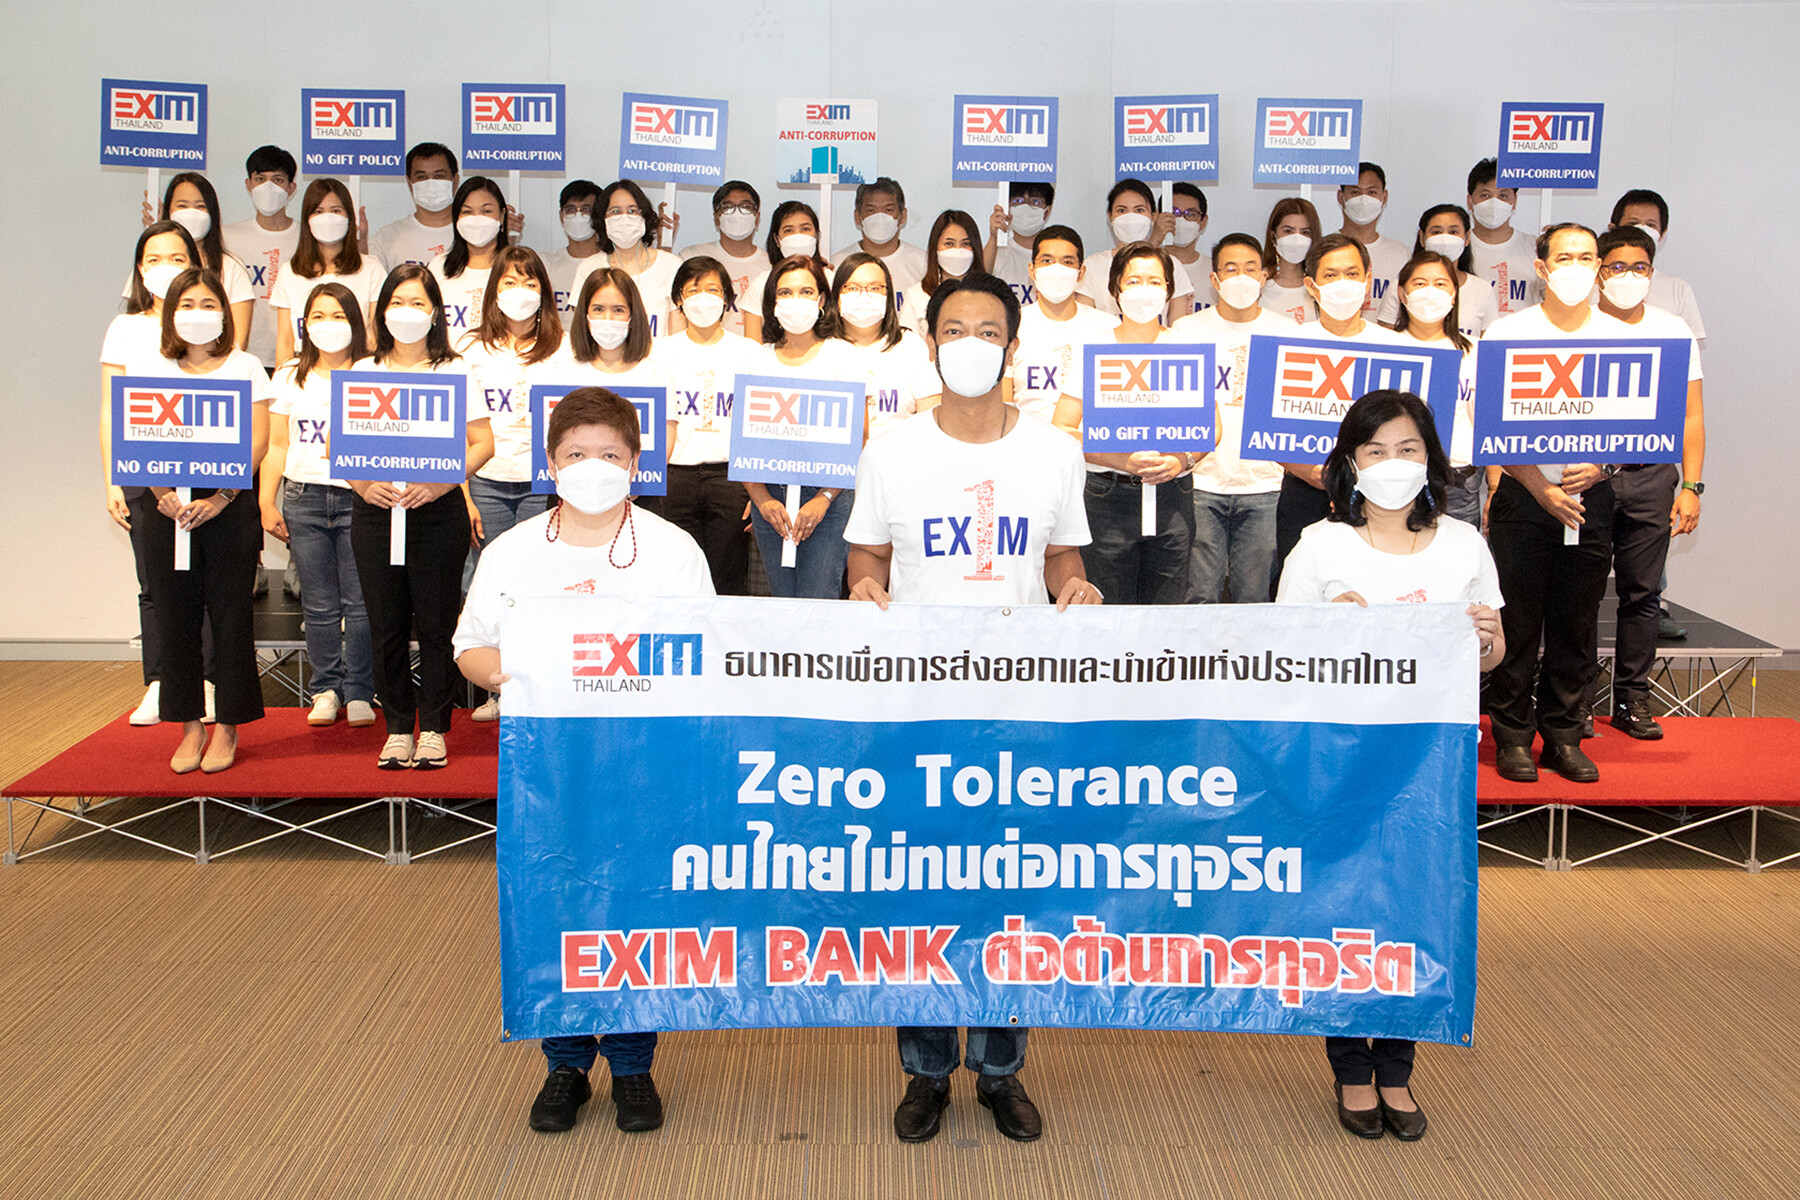 EXIM BANK ร่วมสนับสนุนและแสดงจุดยืนเป็นองค์กรต่อต้านคอร์รัปชัน "ไม่ทำ ไม่ทน ไม่เฉย รวมไทยต้านโกง"